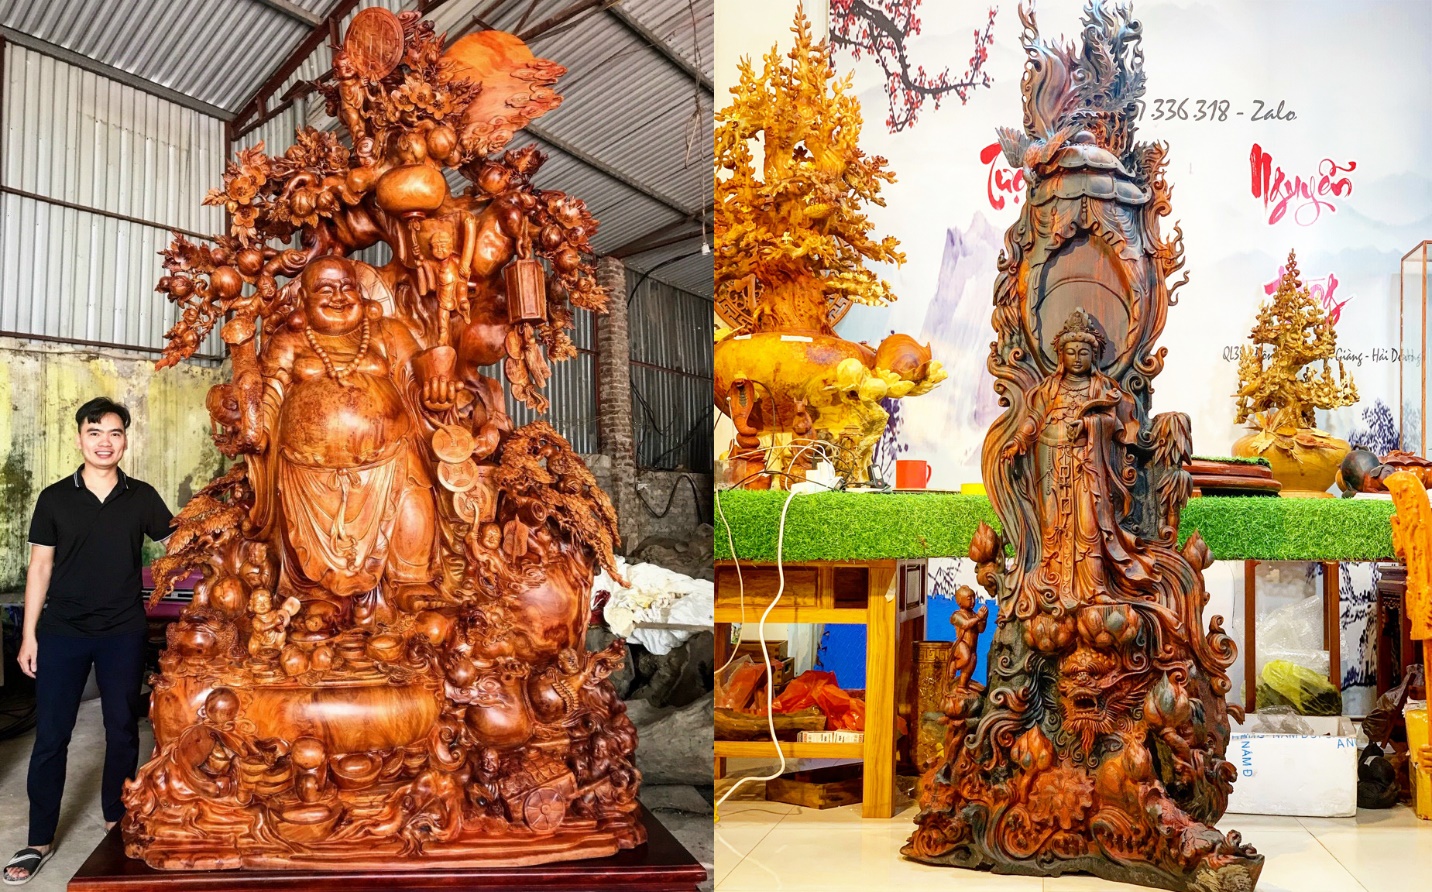 Quyền lợi tiêu dùng - Tượng gỗ Nguyễn Hồng – Lưu ý khi chơi tượng gỗ phong thủy để gia chủ làm ăn phát tài